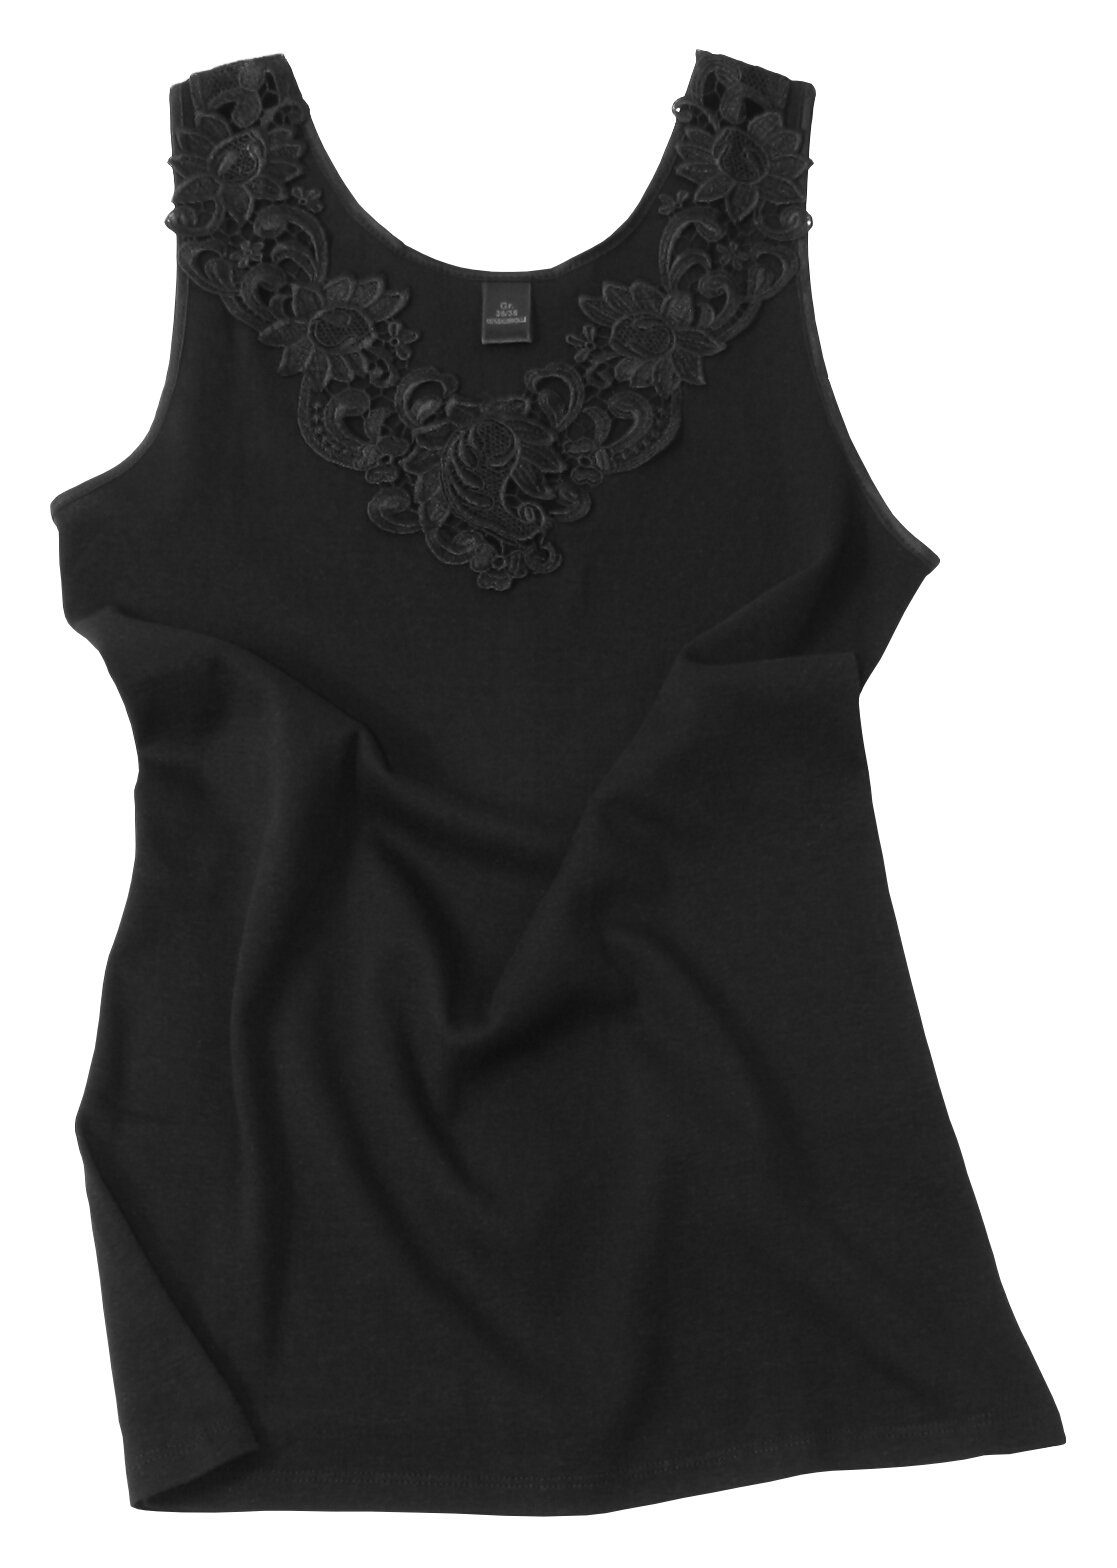 Cotton Prime® Unterhemd mit Spitze Baumwollqualität schwarz angenehmer in